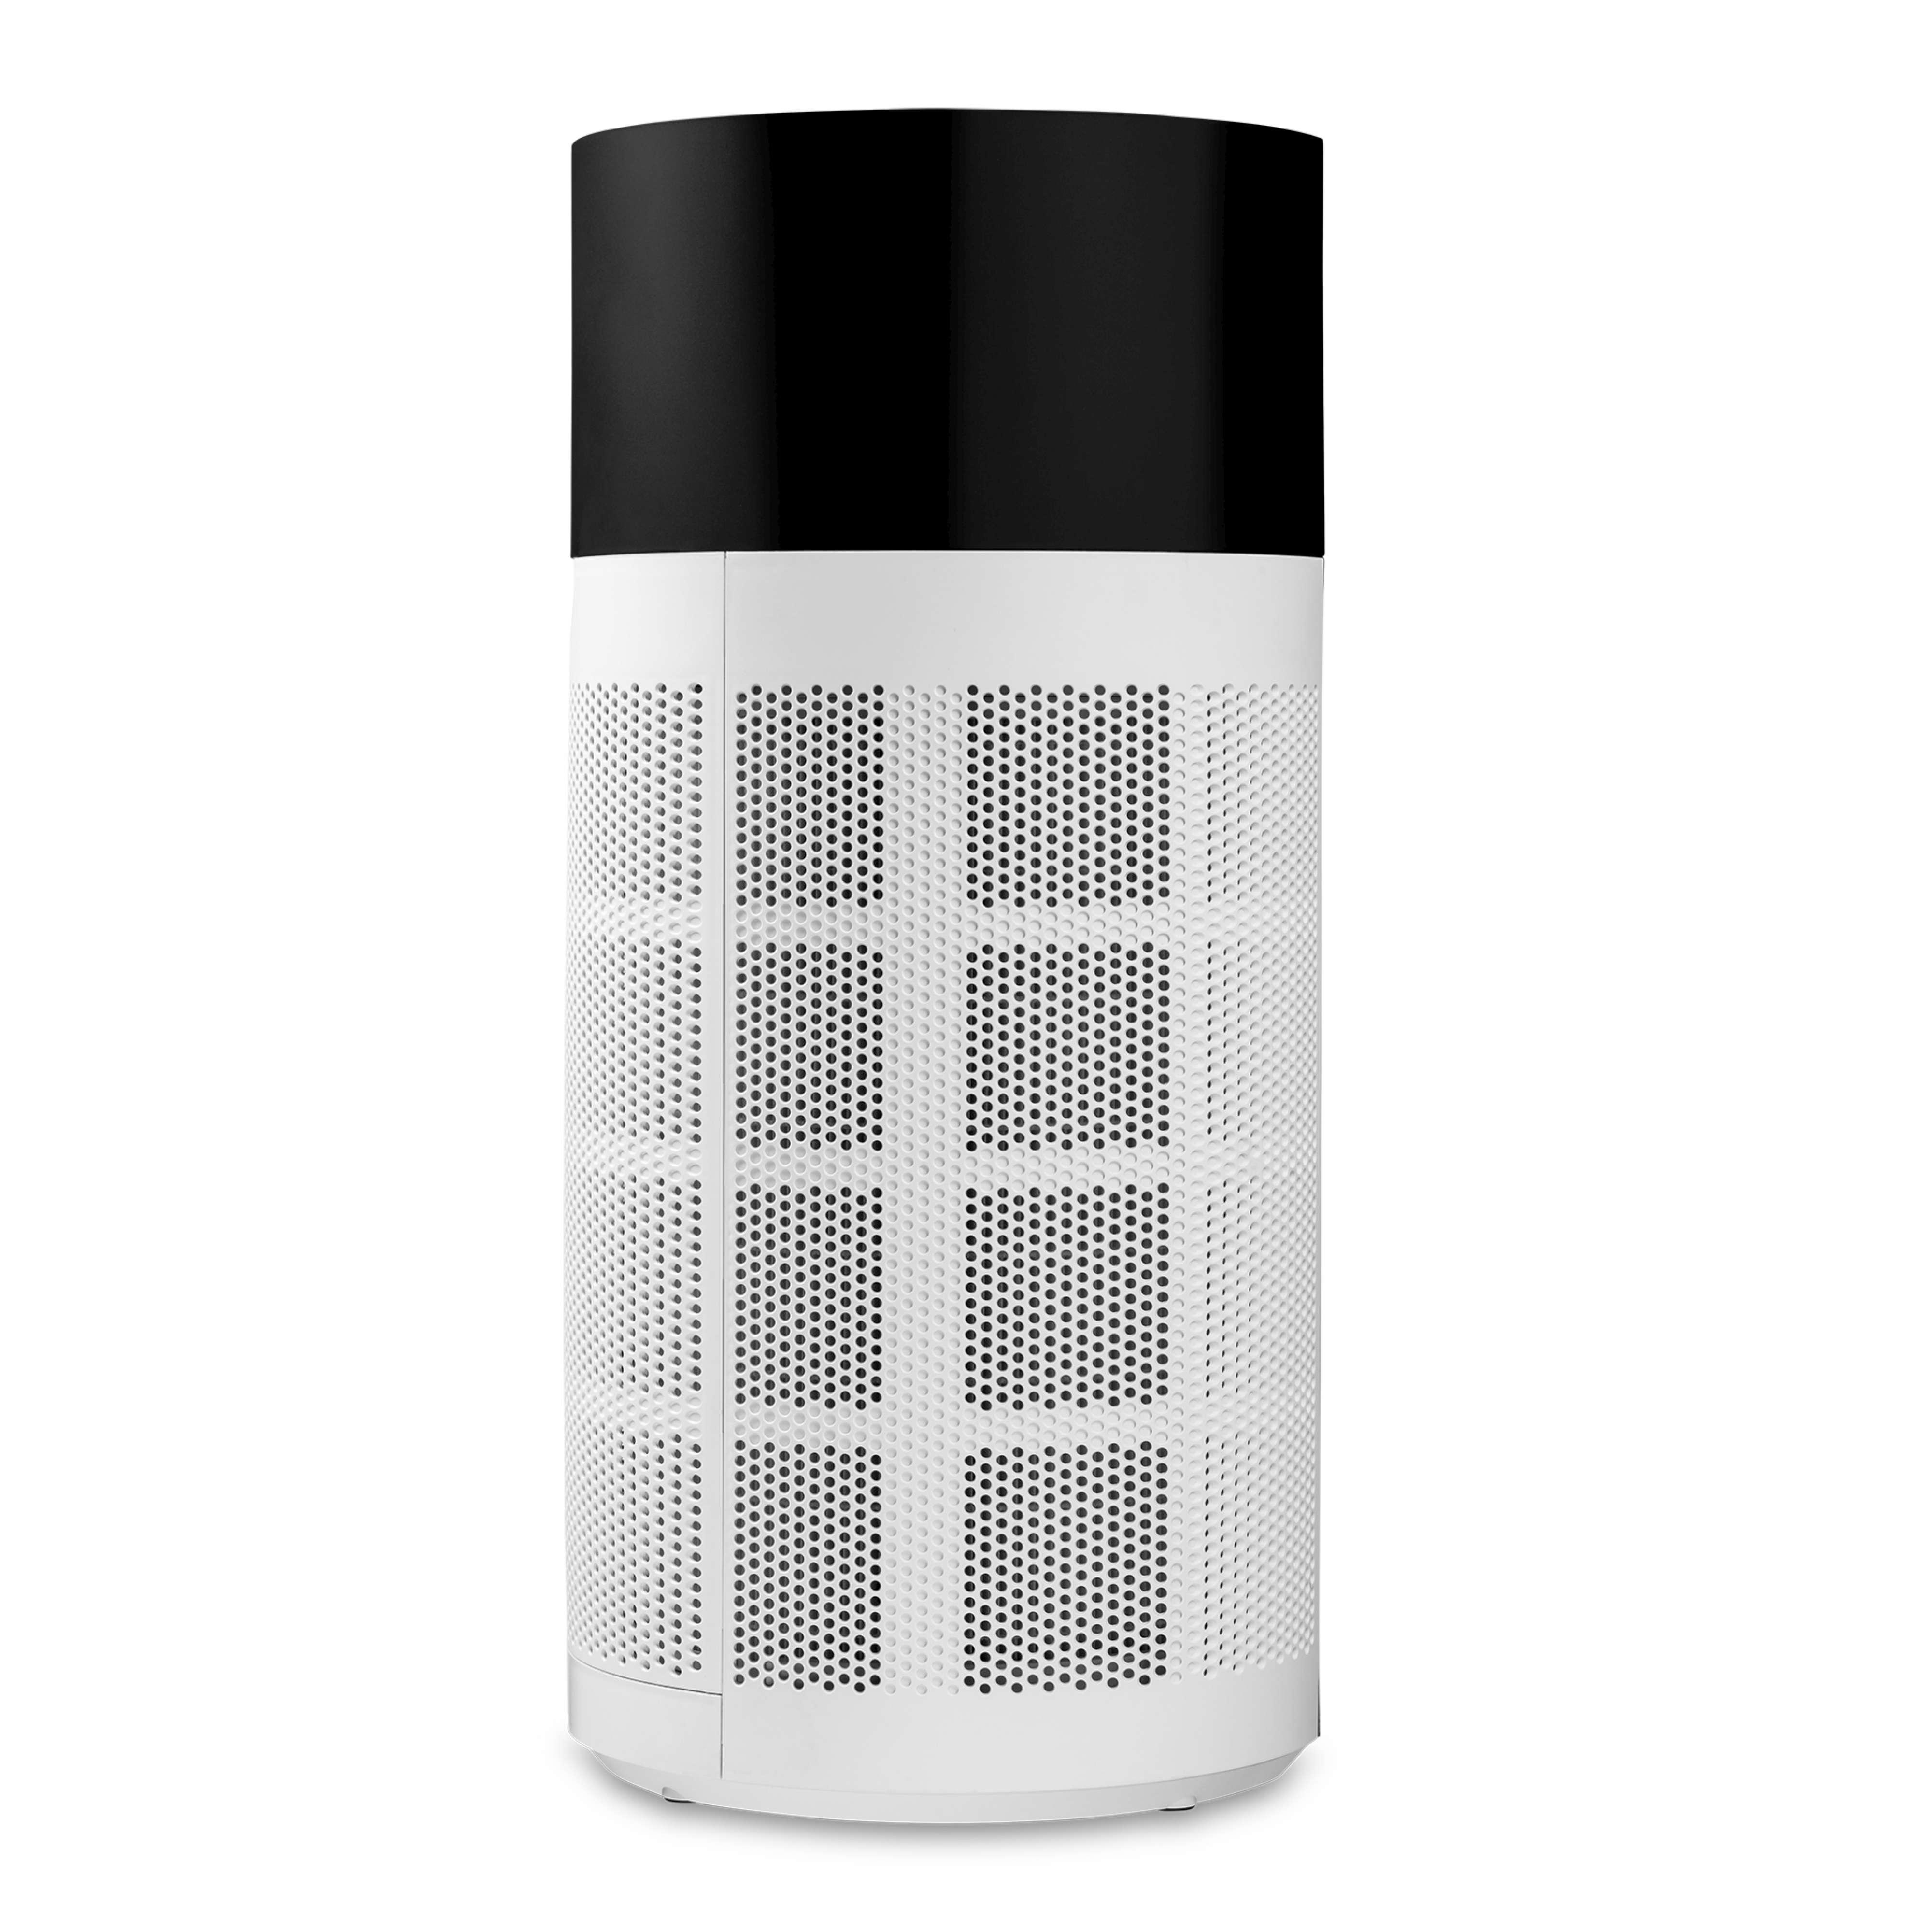 DUUX DXPU03 Tube Smart Luftreiniger Aktivkohlefilter) Weiß Watt, m², Raumgröße: und Vorfilterung, 75 (55 H13